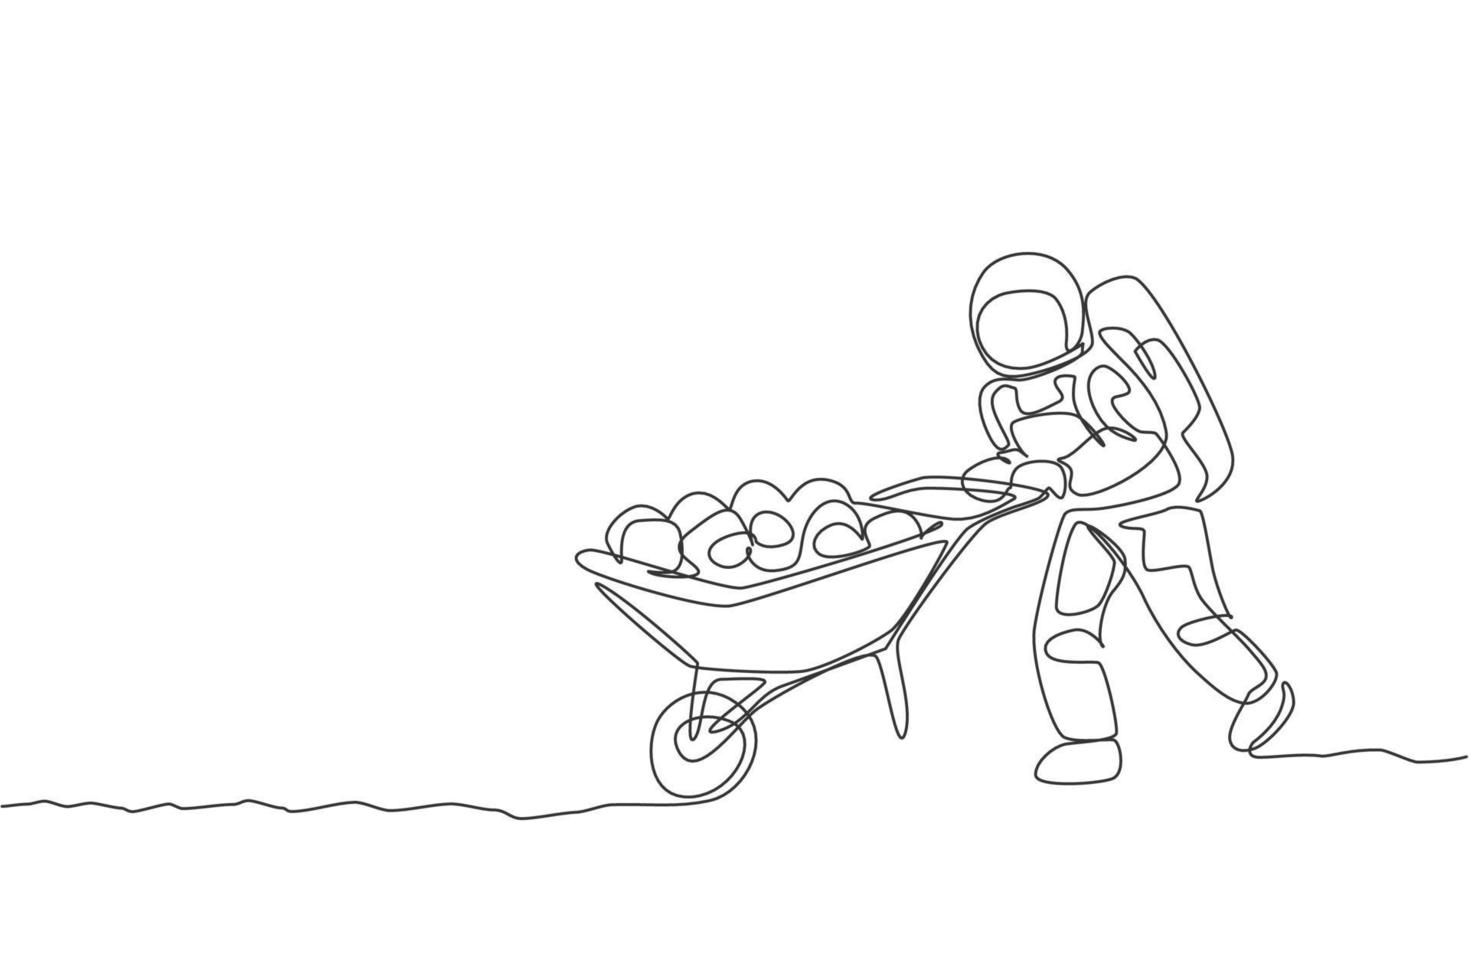 enkele doorlopende lijntekening van kosmonaut die kruiwagen vol fruit en groenten in het maanoppervlak duwt. melkweg astronaut landbouw leven concept. trendy één lijn tekenen ontwerp vectorillustratie vector